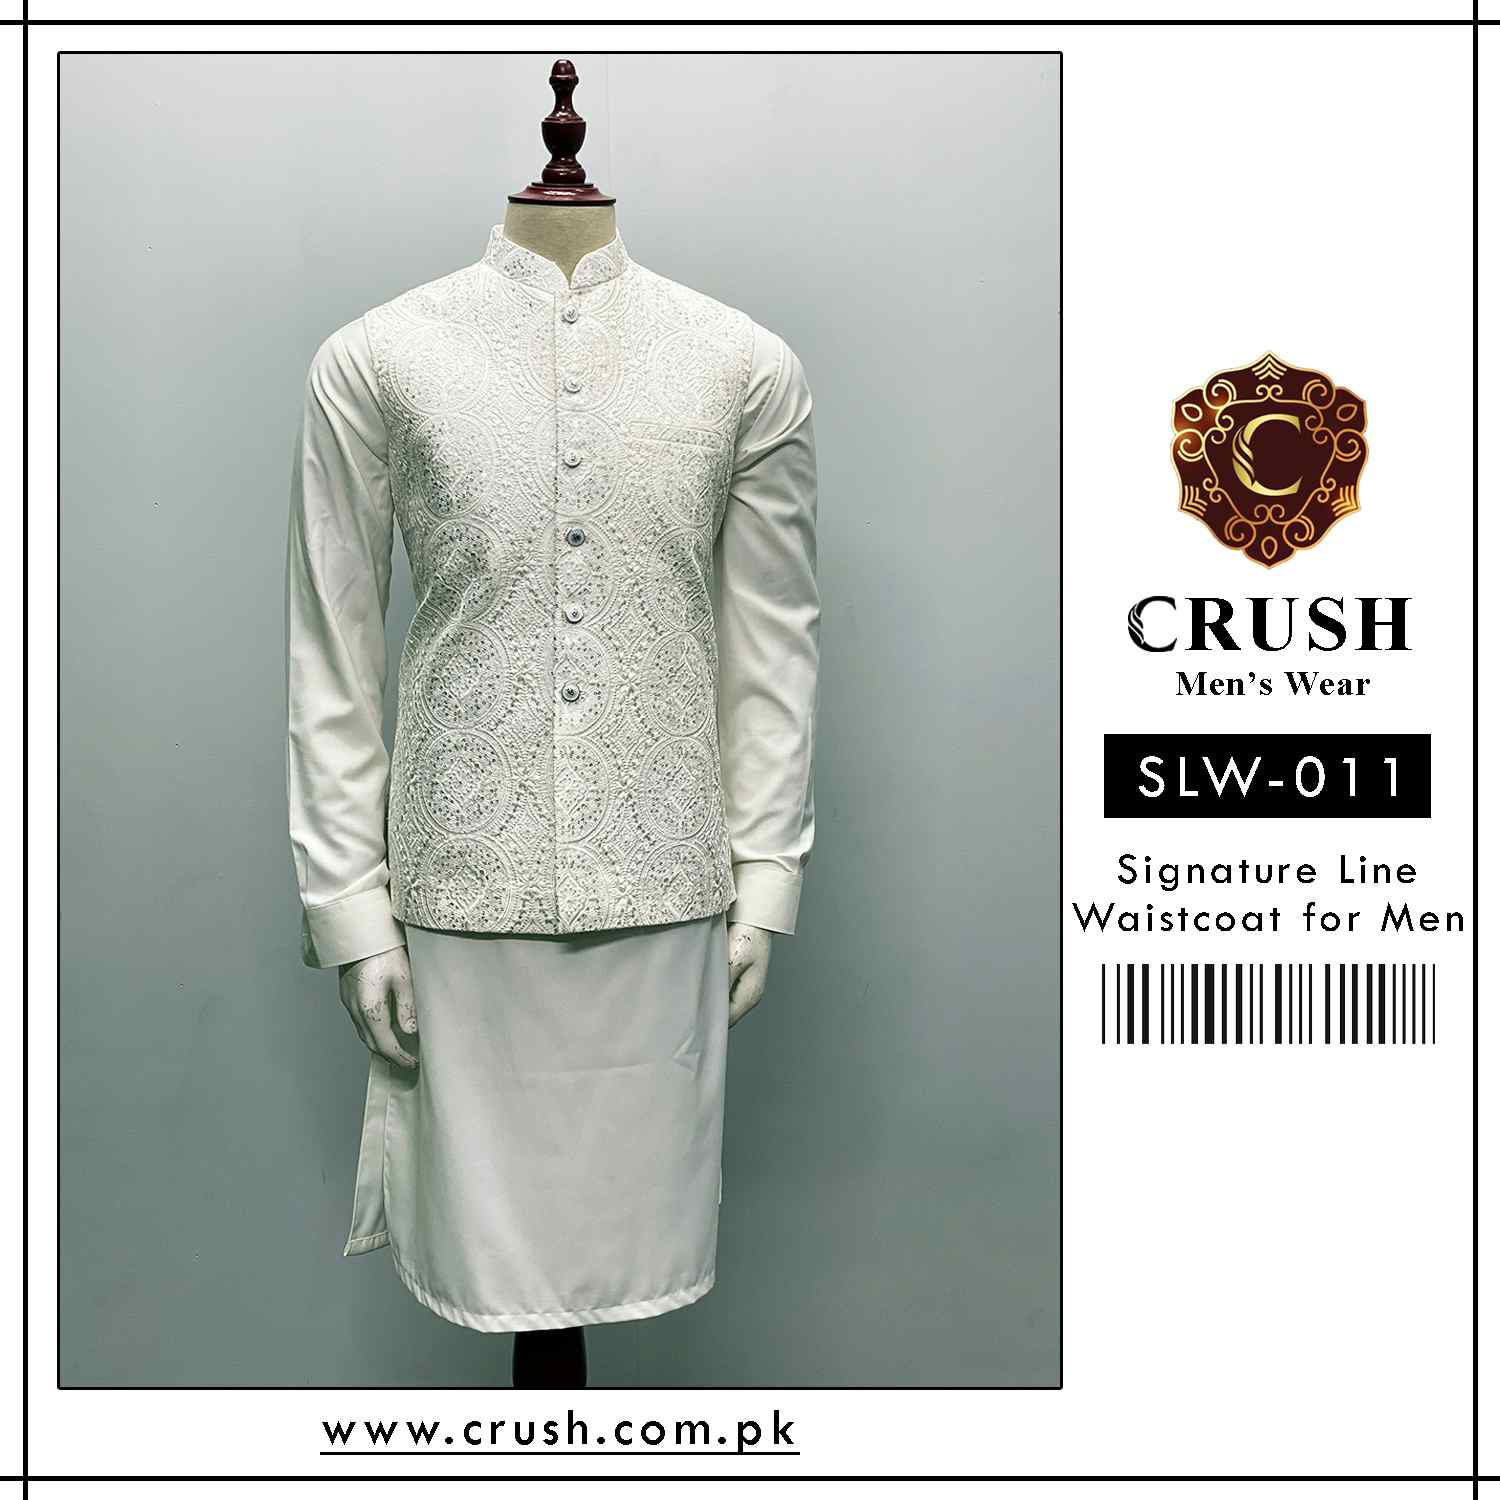 SLW-011 Waistcoat for Men